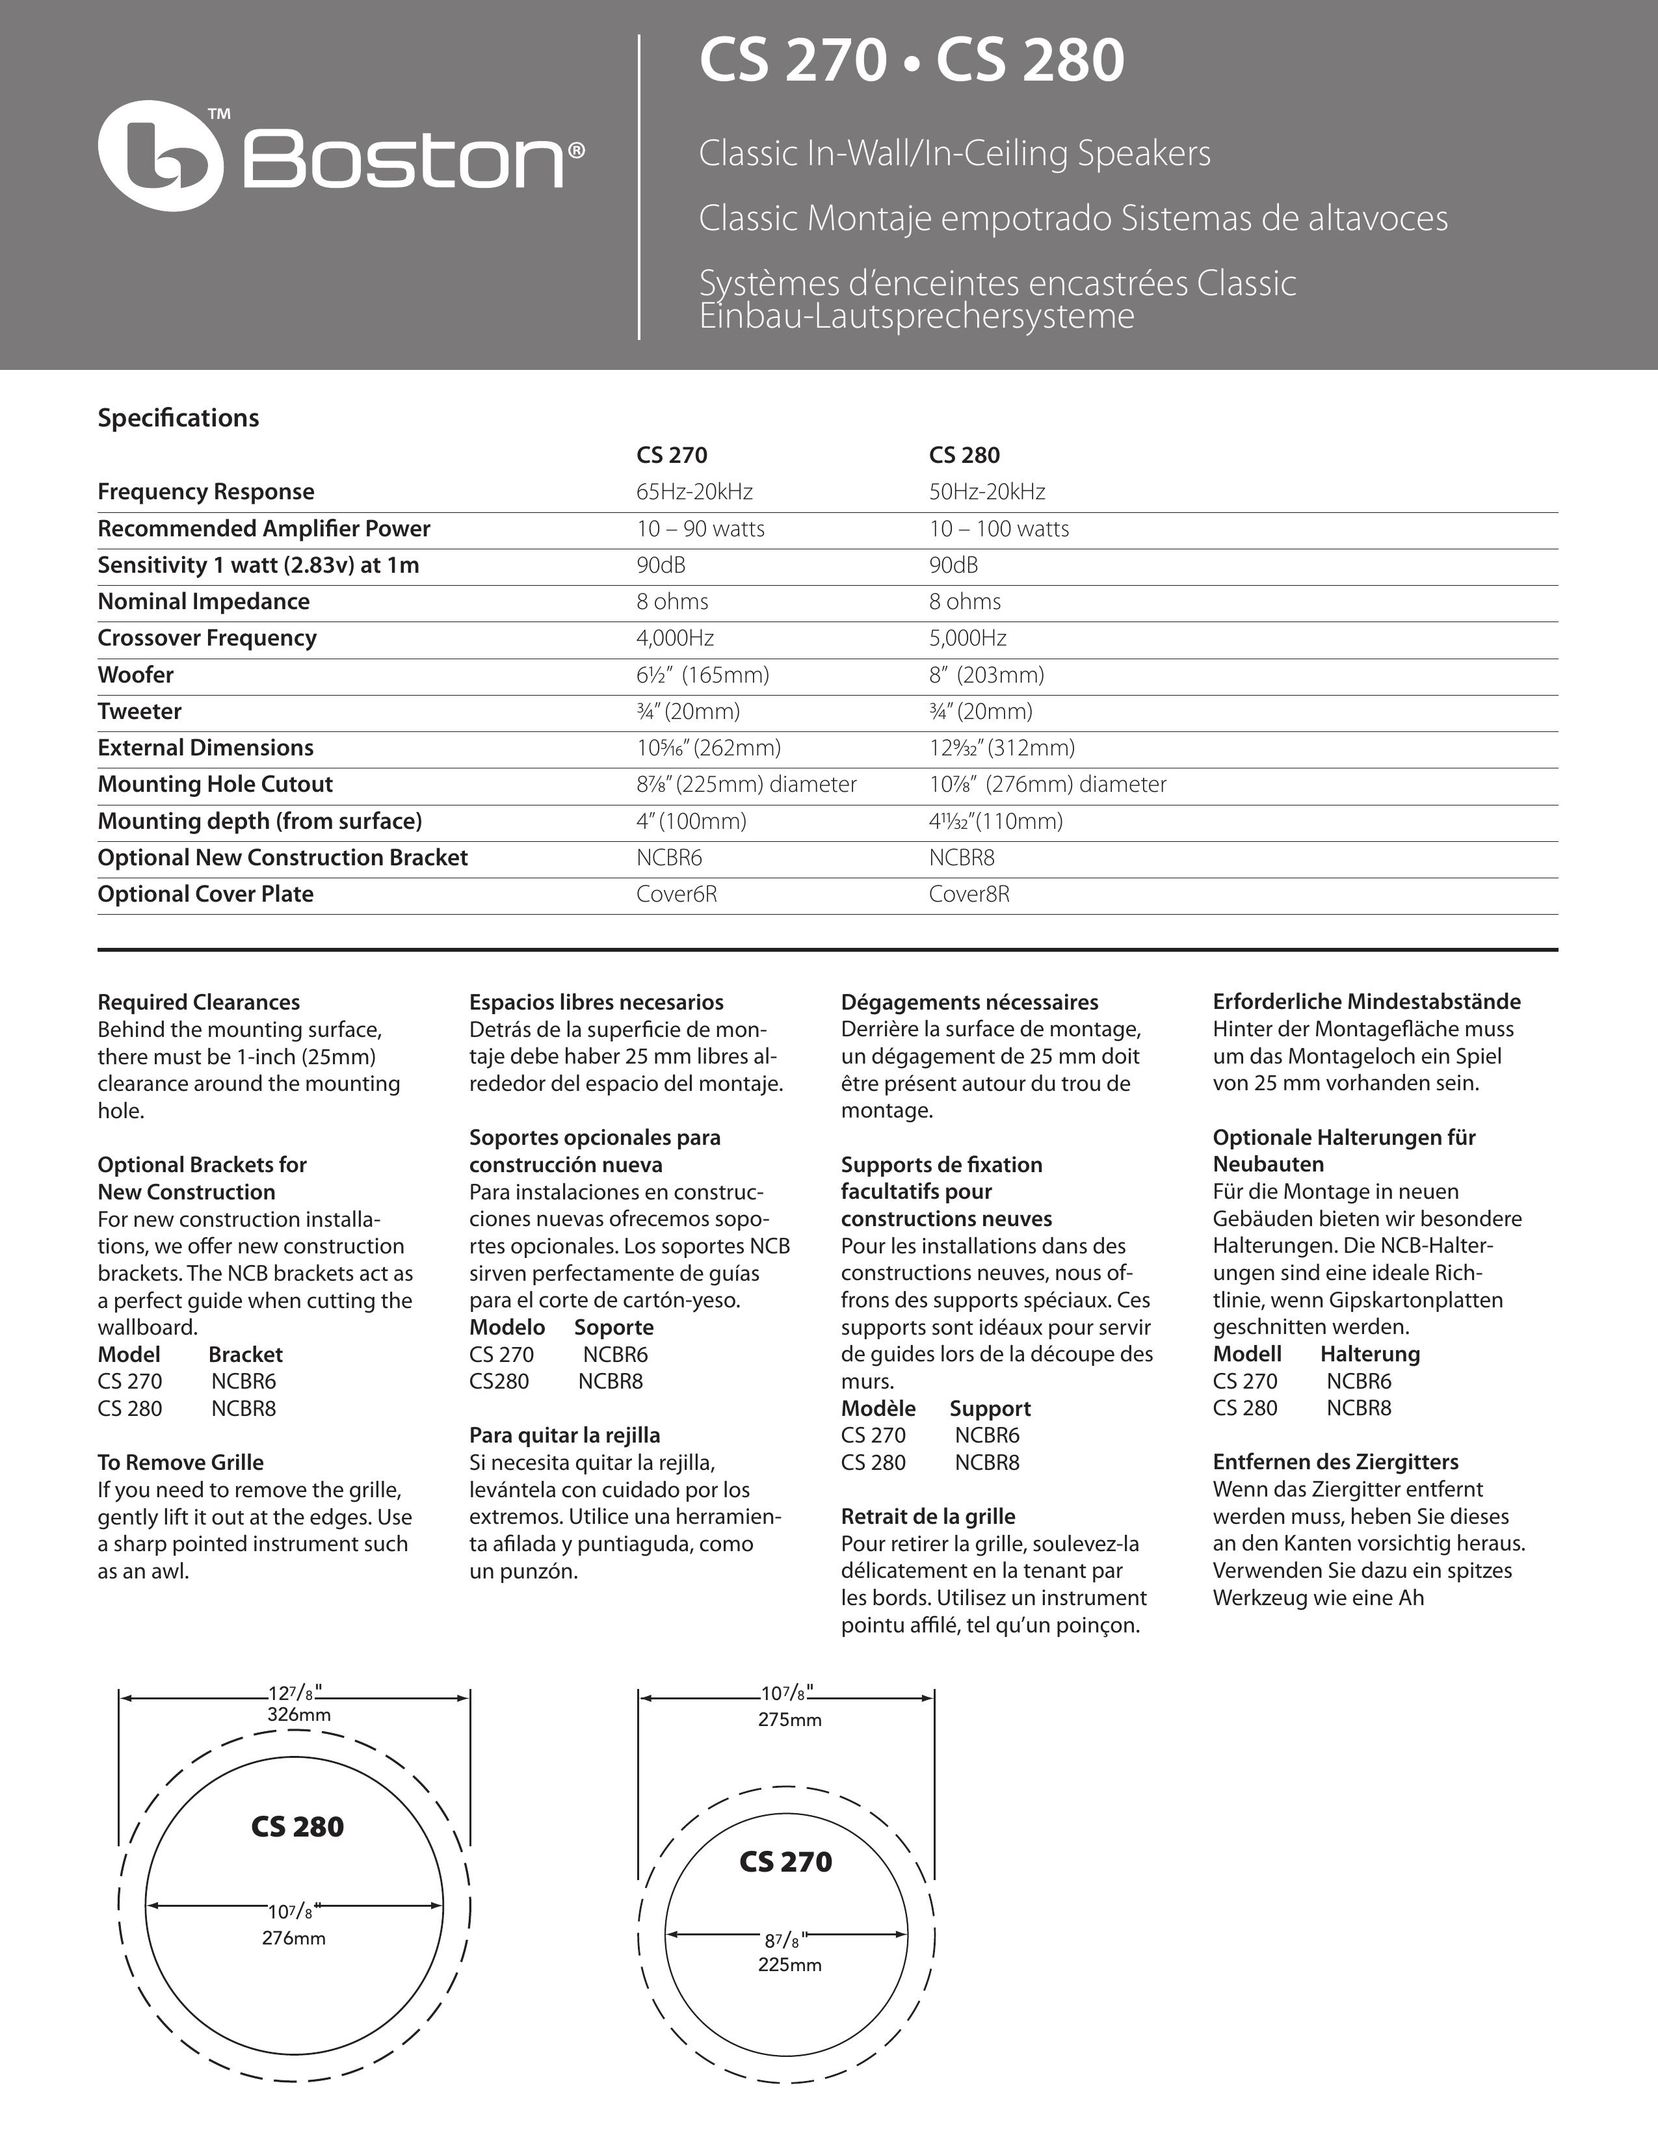 Boston Acoustics CS 280 8"" Speaker User Manual